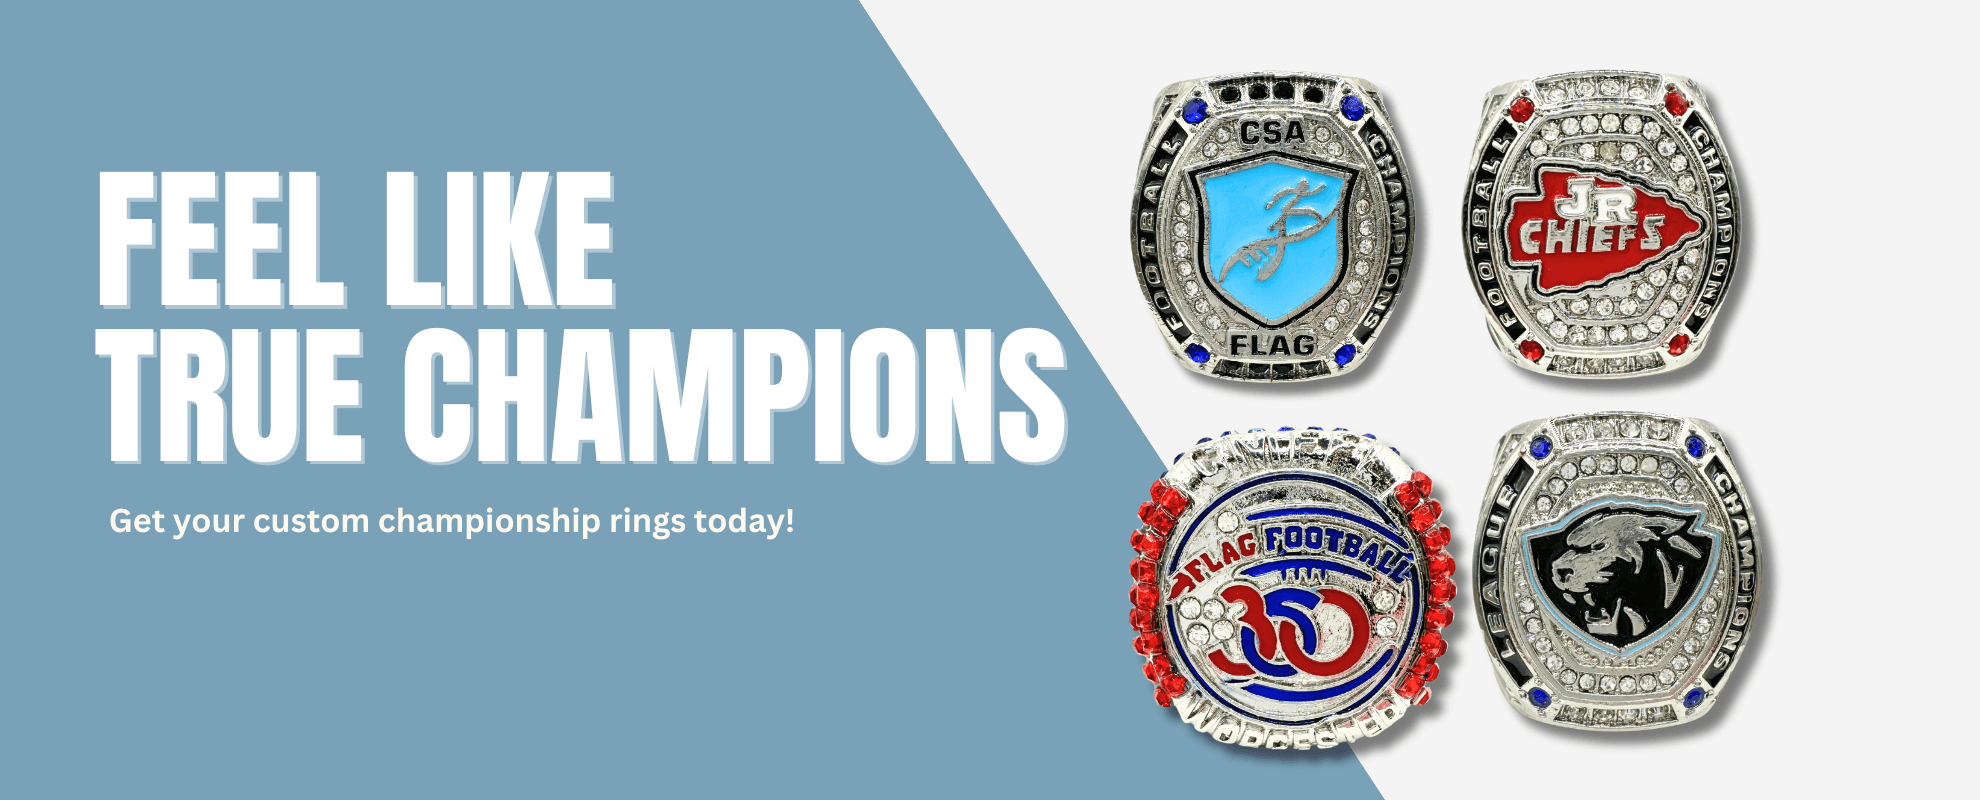 Championship ring - Wikipedia